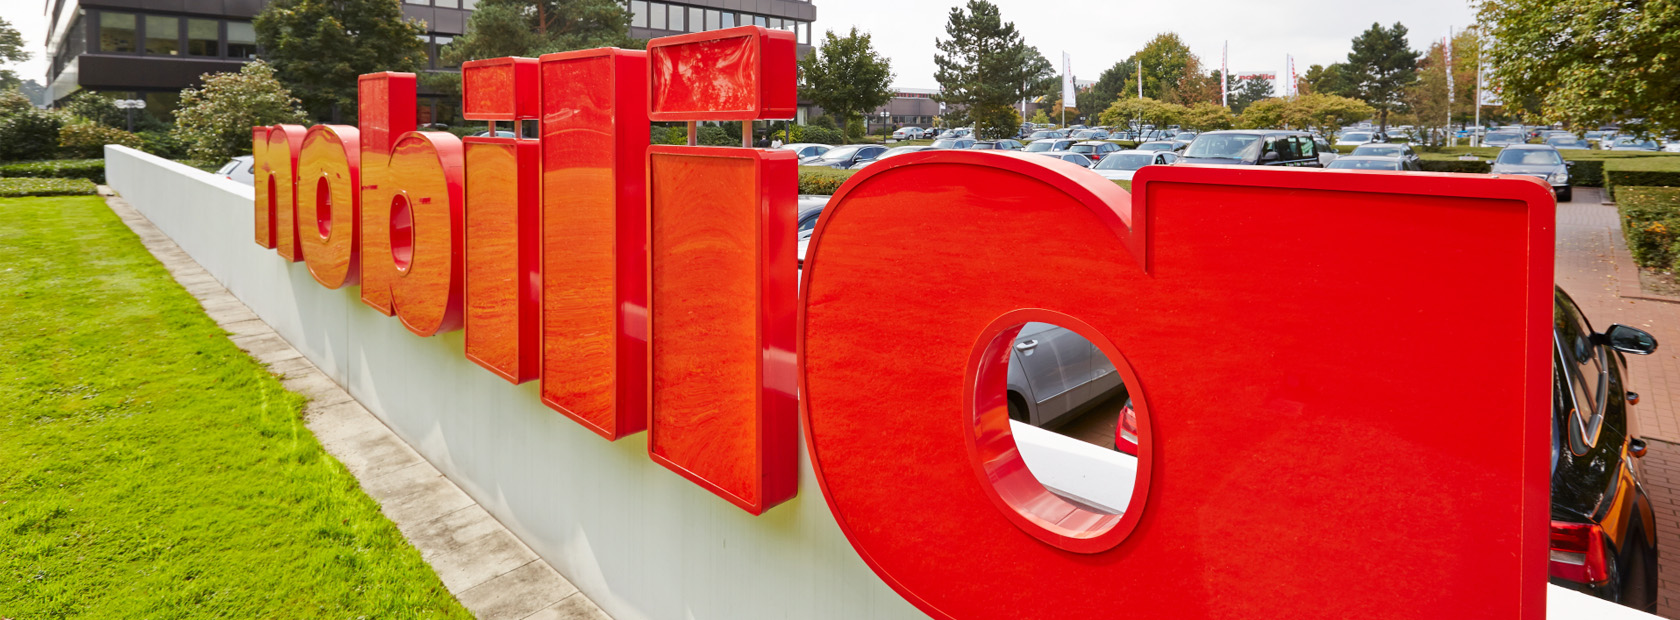 Trójwymiarowe czerwone litery tworzące słowo zainstalowane na zewnątrz, z bujną zielenią i nowoczesnym budynkiem w tle.